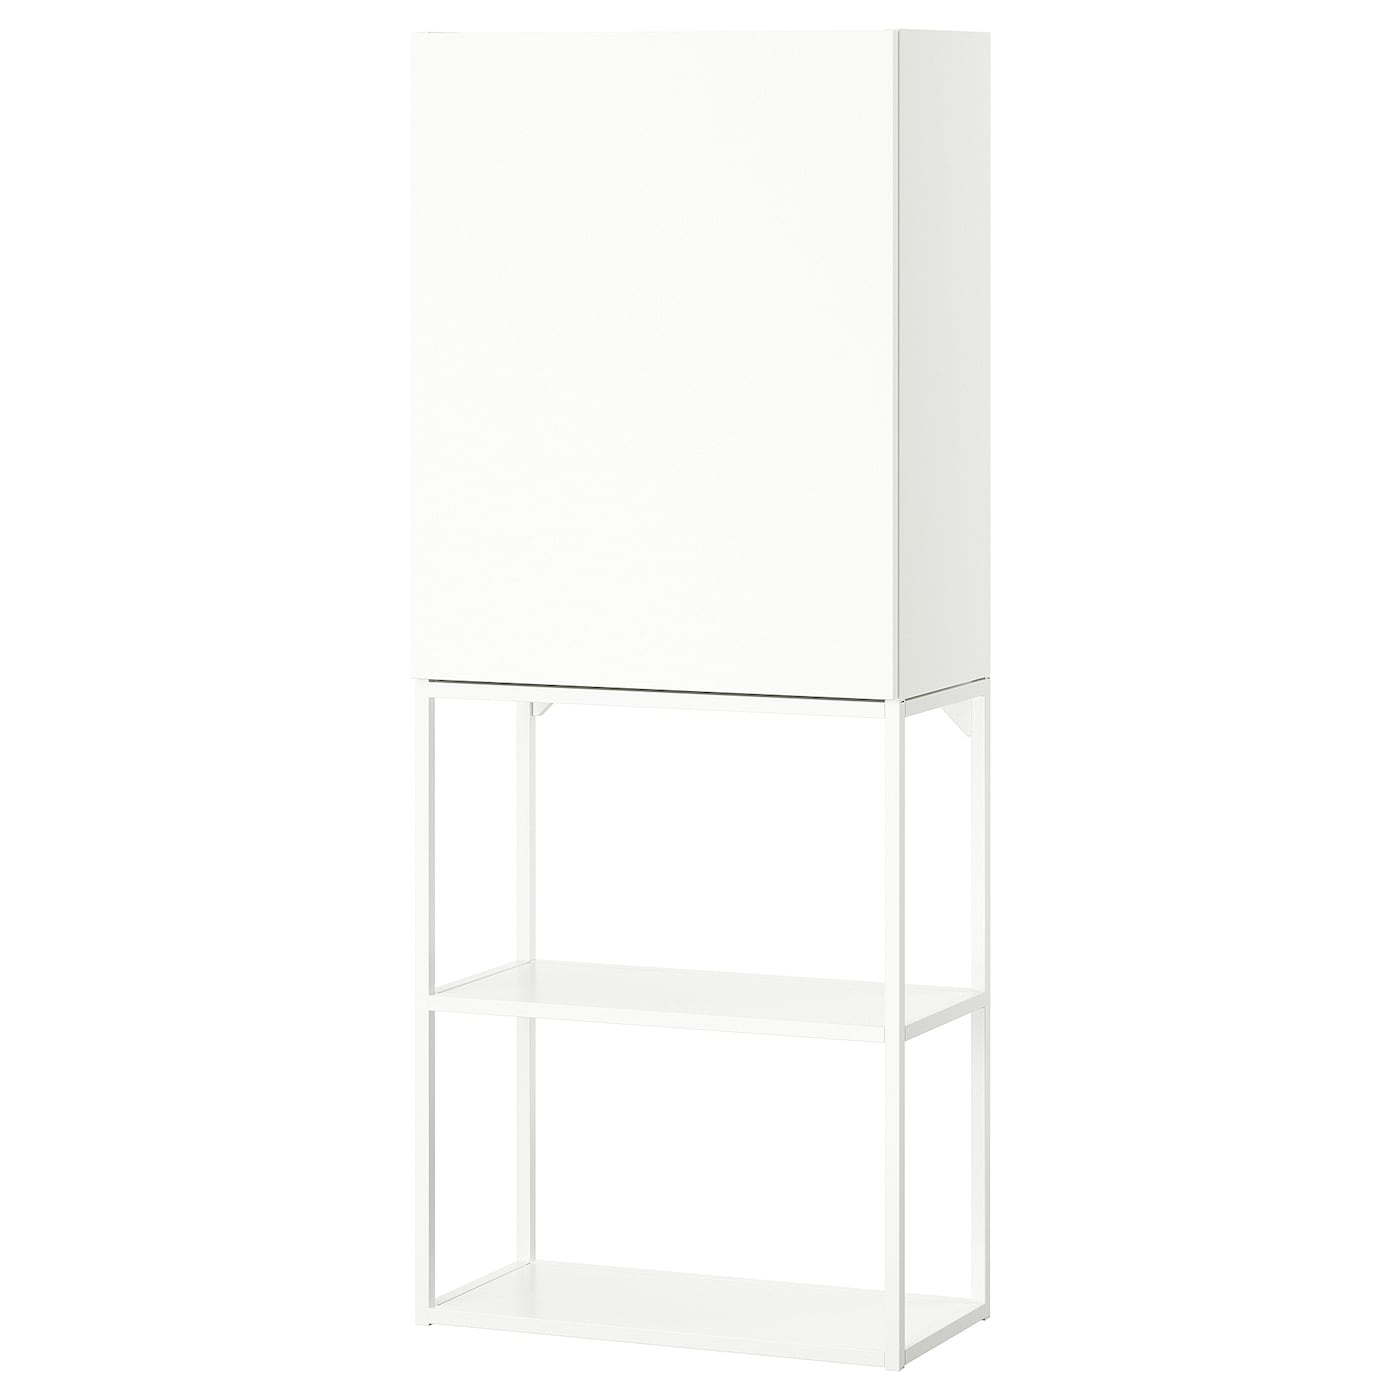 Навесной шкаф - ENHET IKEA/ ЭНХЕТ ИКЕА,   60x32x150 см, белый